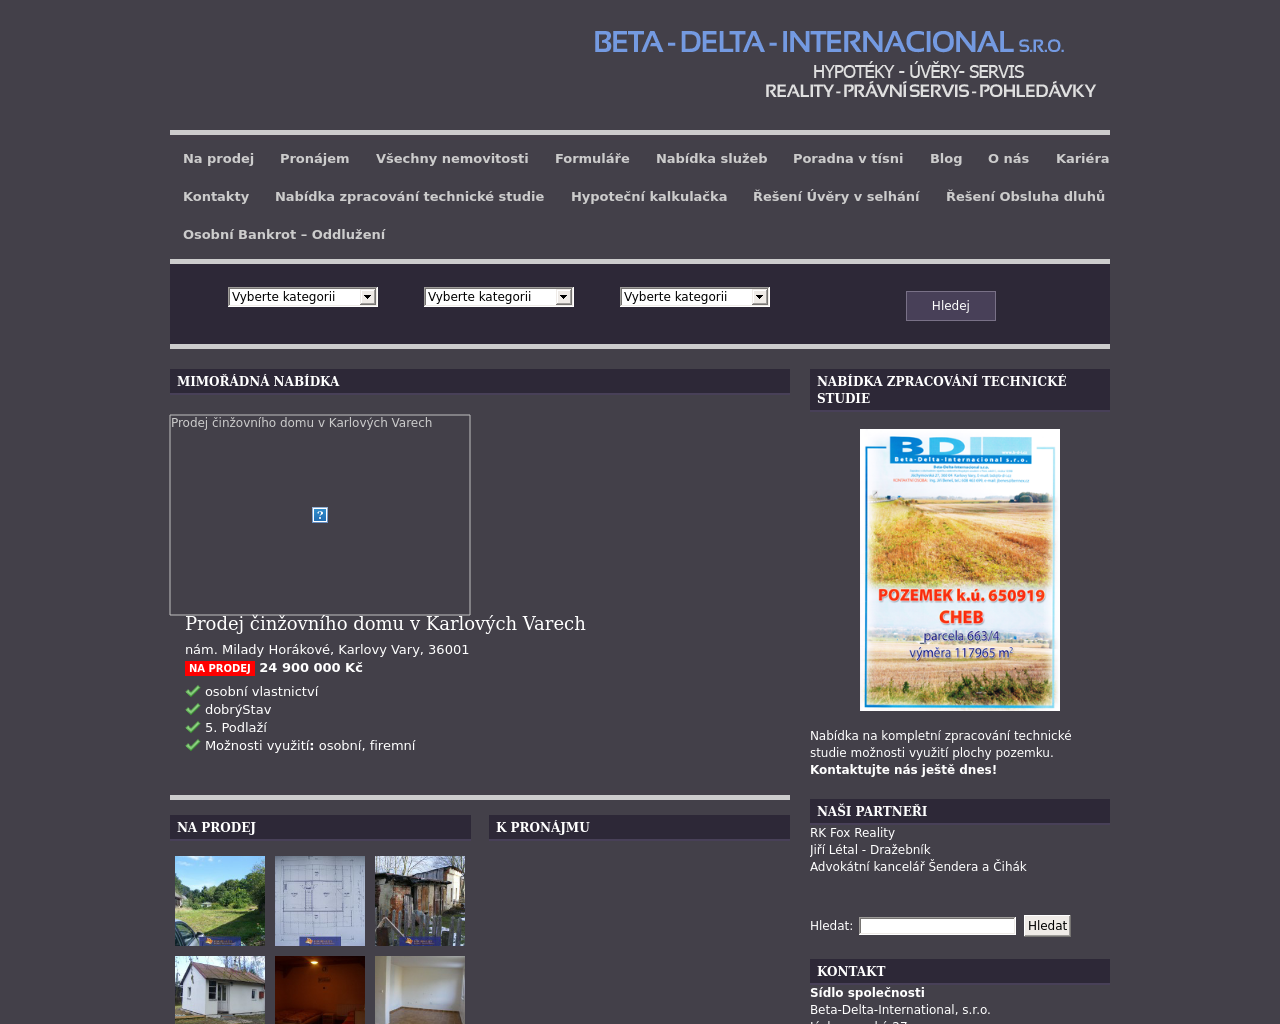 Site Image b-d-i.cz v 1280x1024